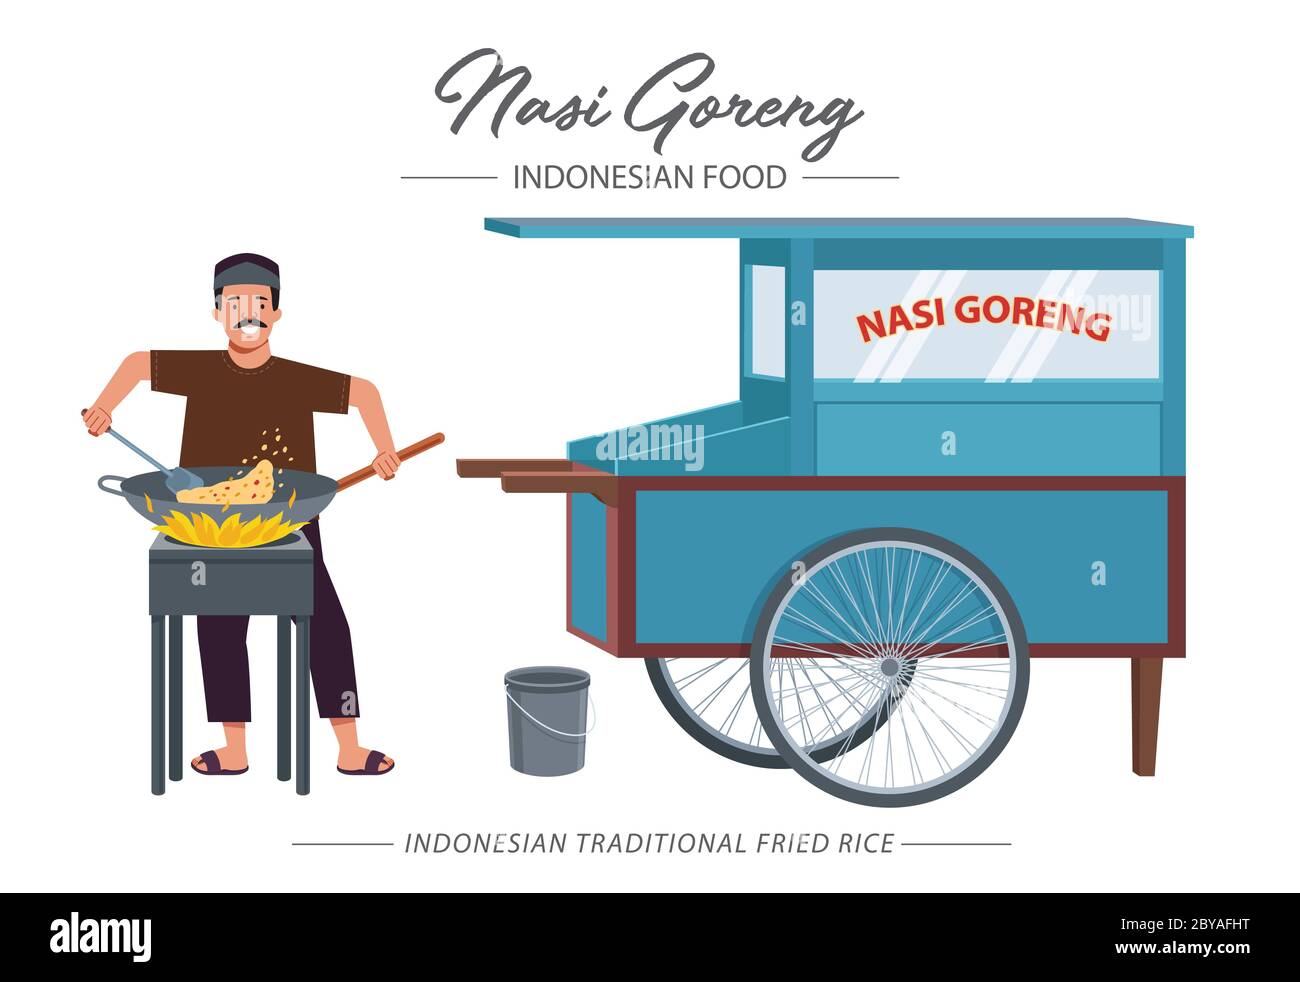 Nasi goreng bedeutet gebratenen Reis, ist ein beliebtes indonesisches oder malaysisches Reisgericht. Illustration eines frittierten Reishändlers, der auf einem Herd kocht, während er lächelt Stock Vektor